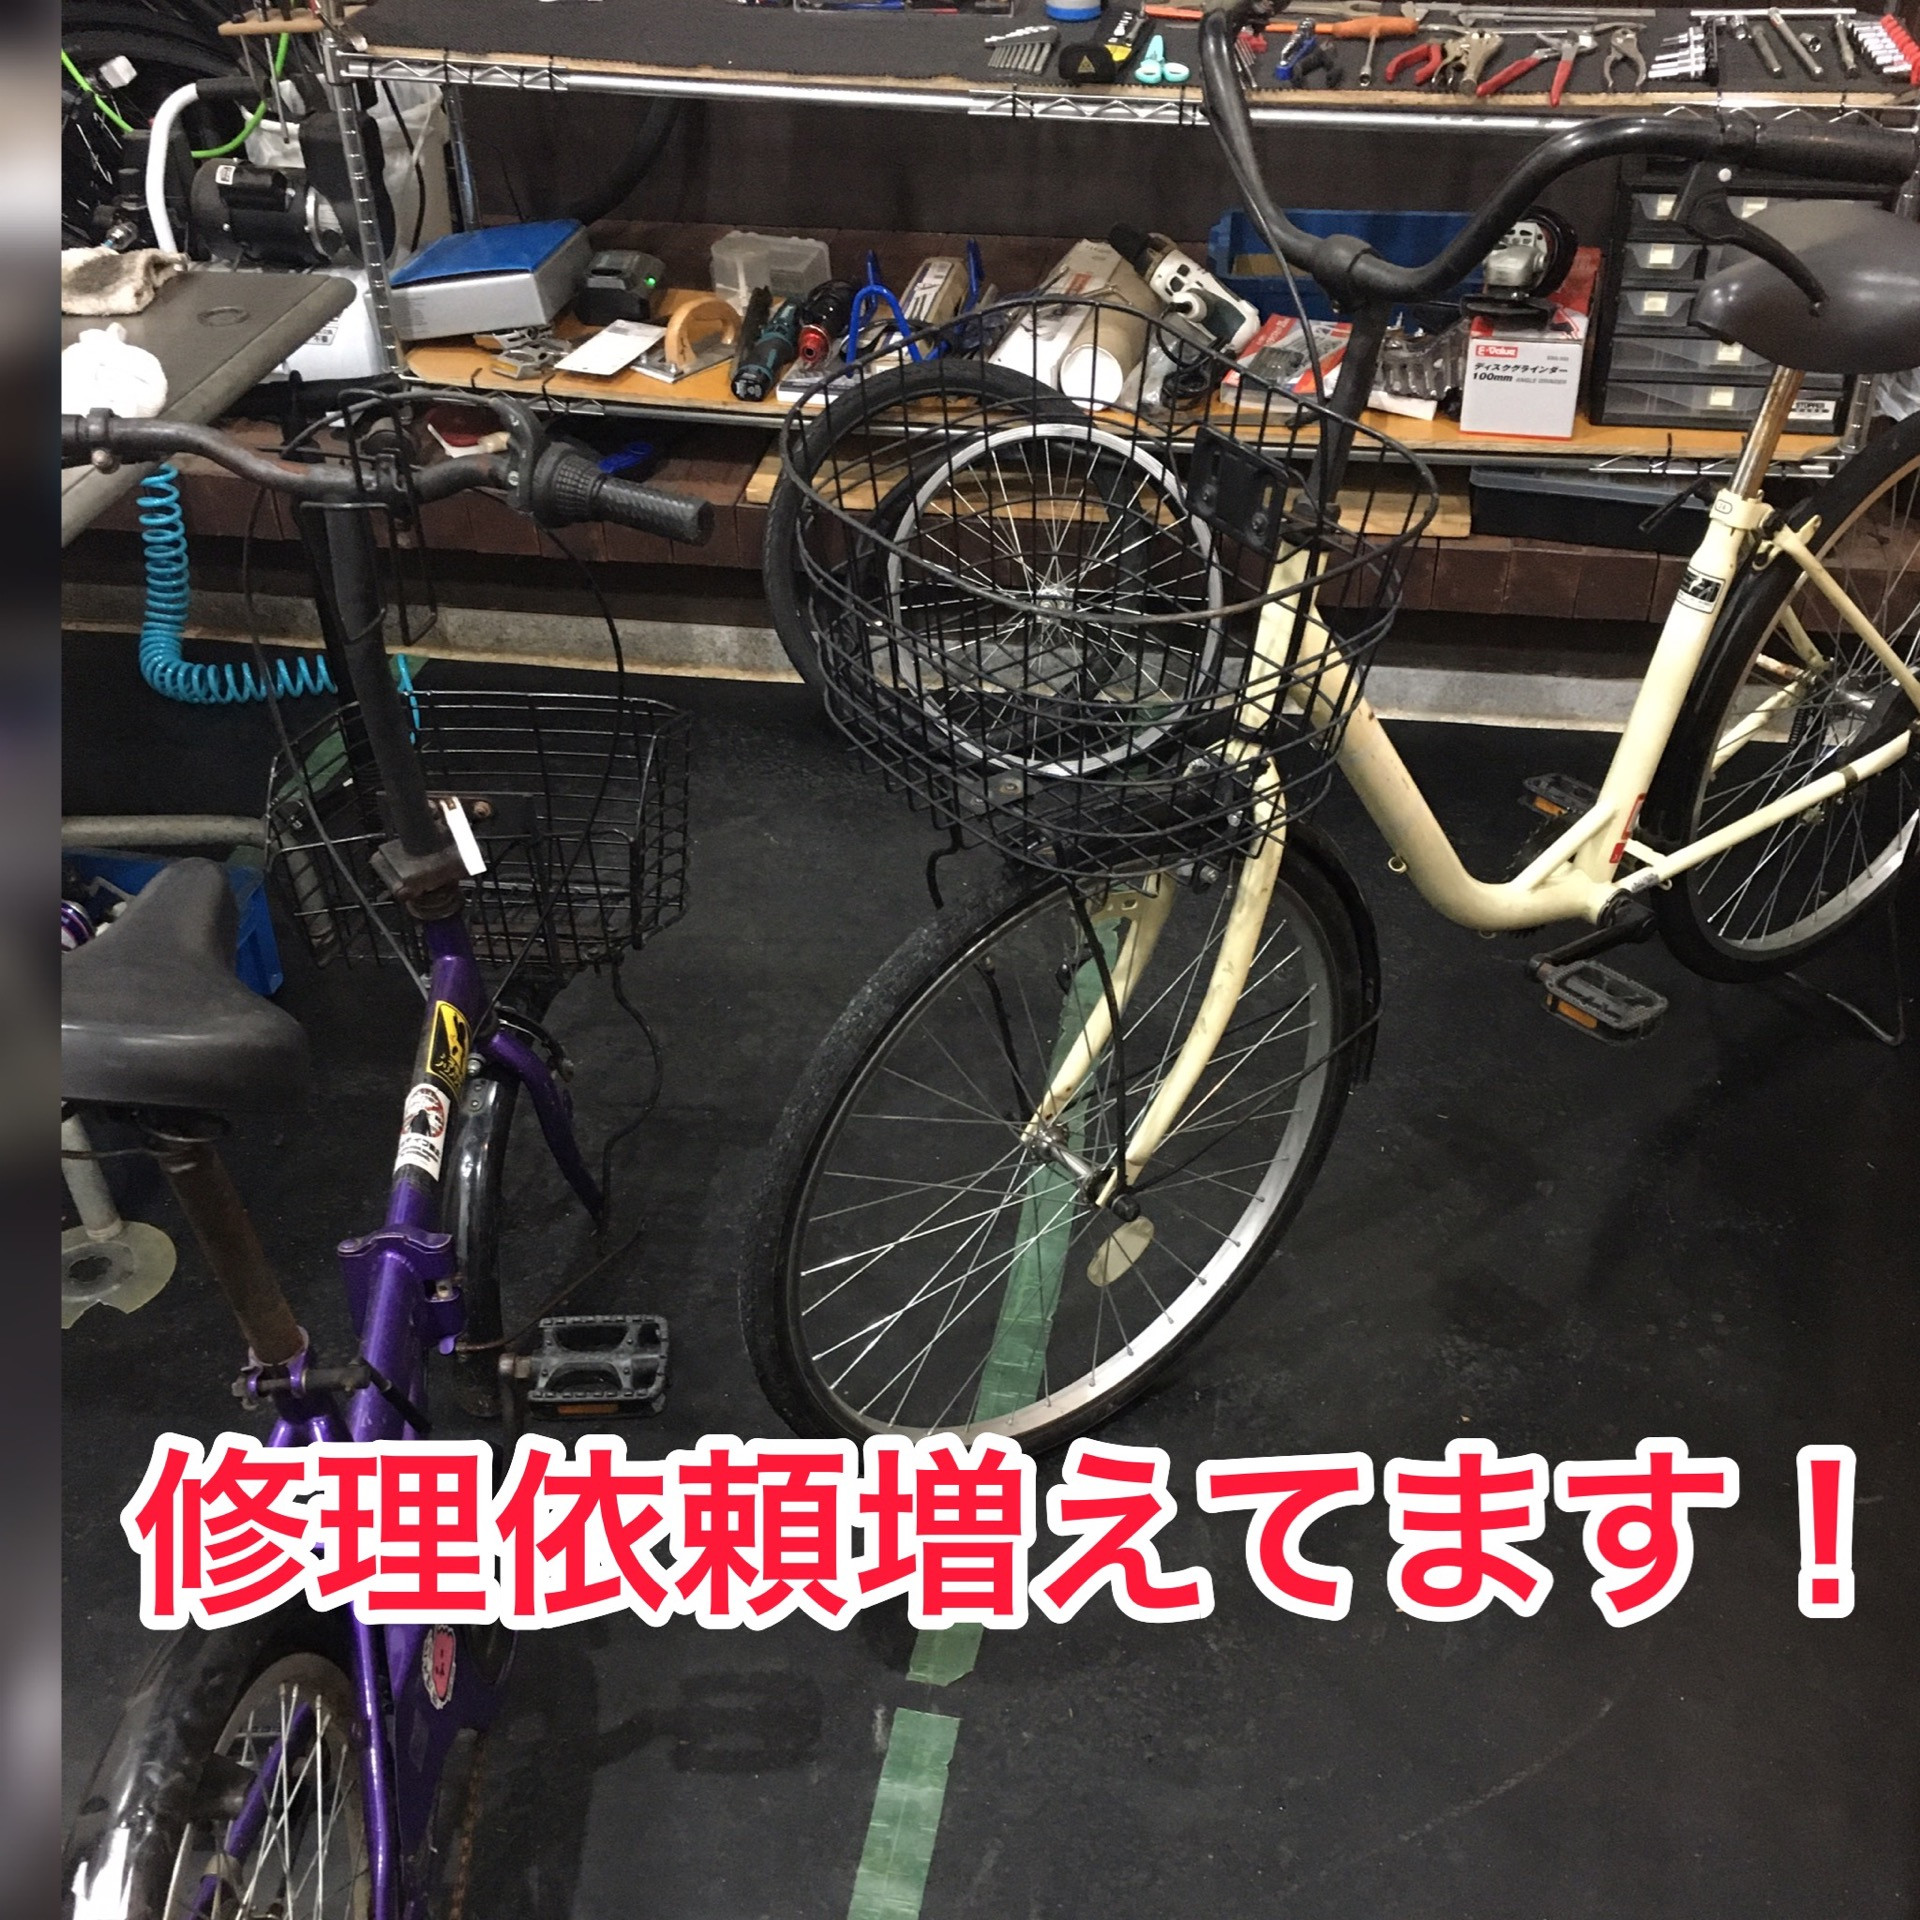 京丹波町のお客様より自転車の修理依頼をいただきました！＆コロナについて・・・。